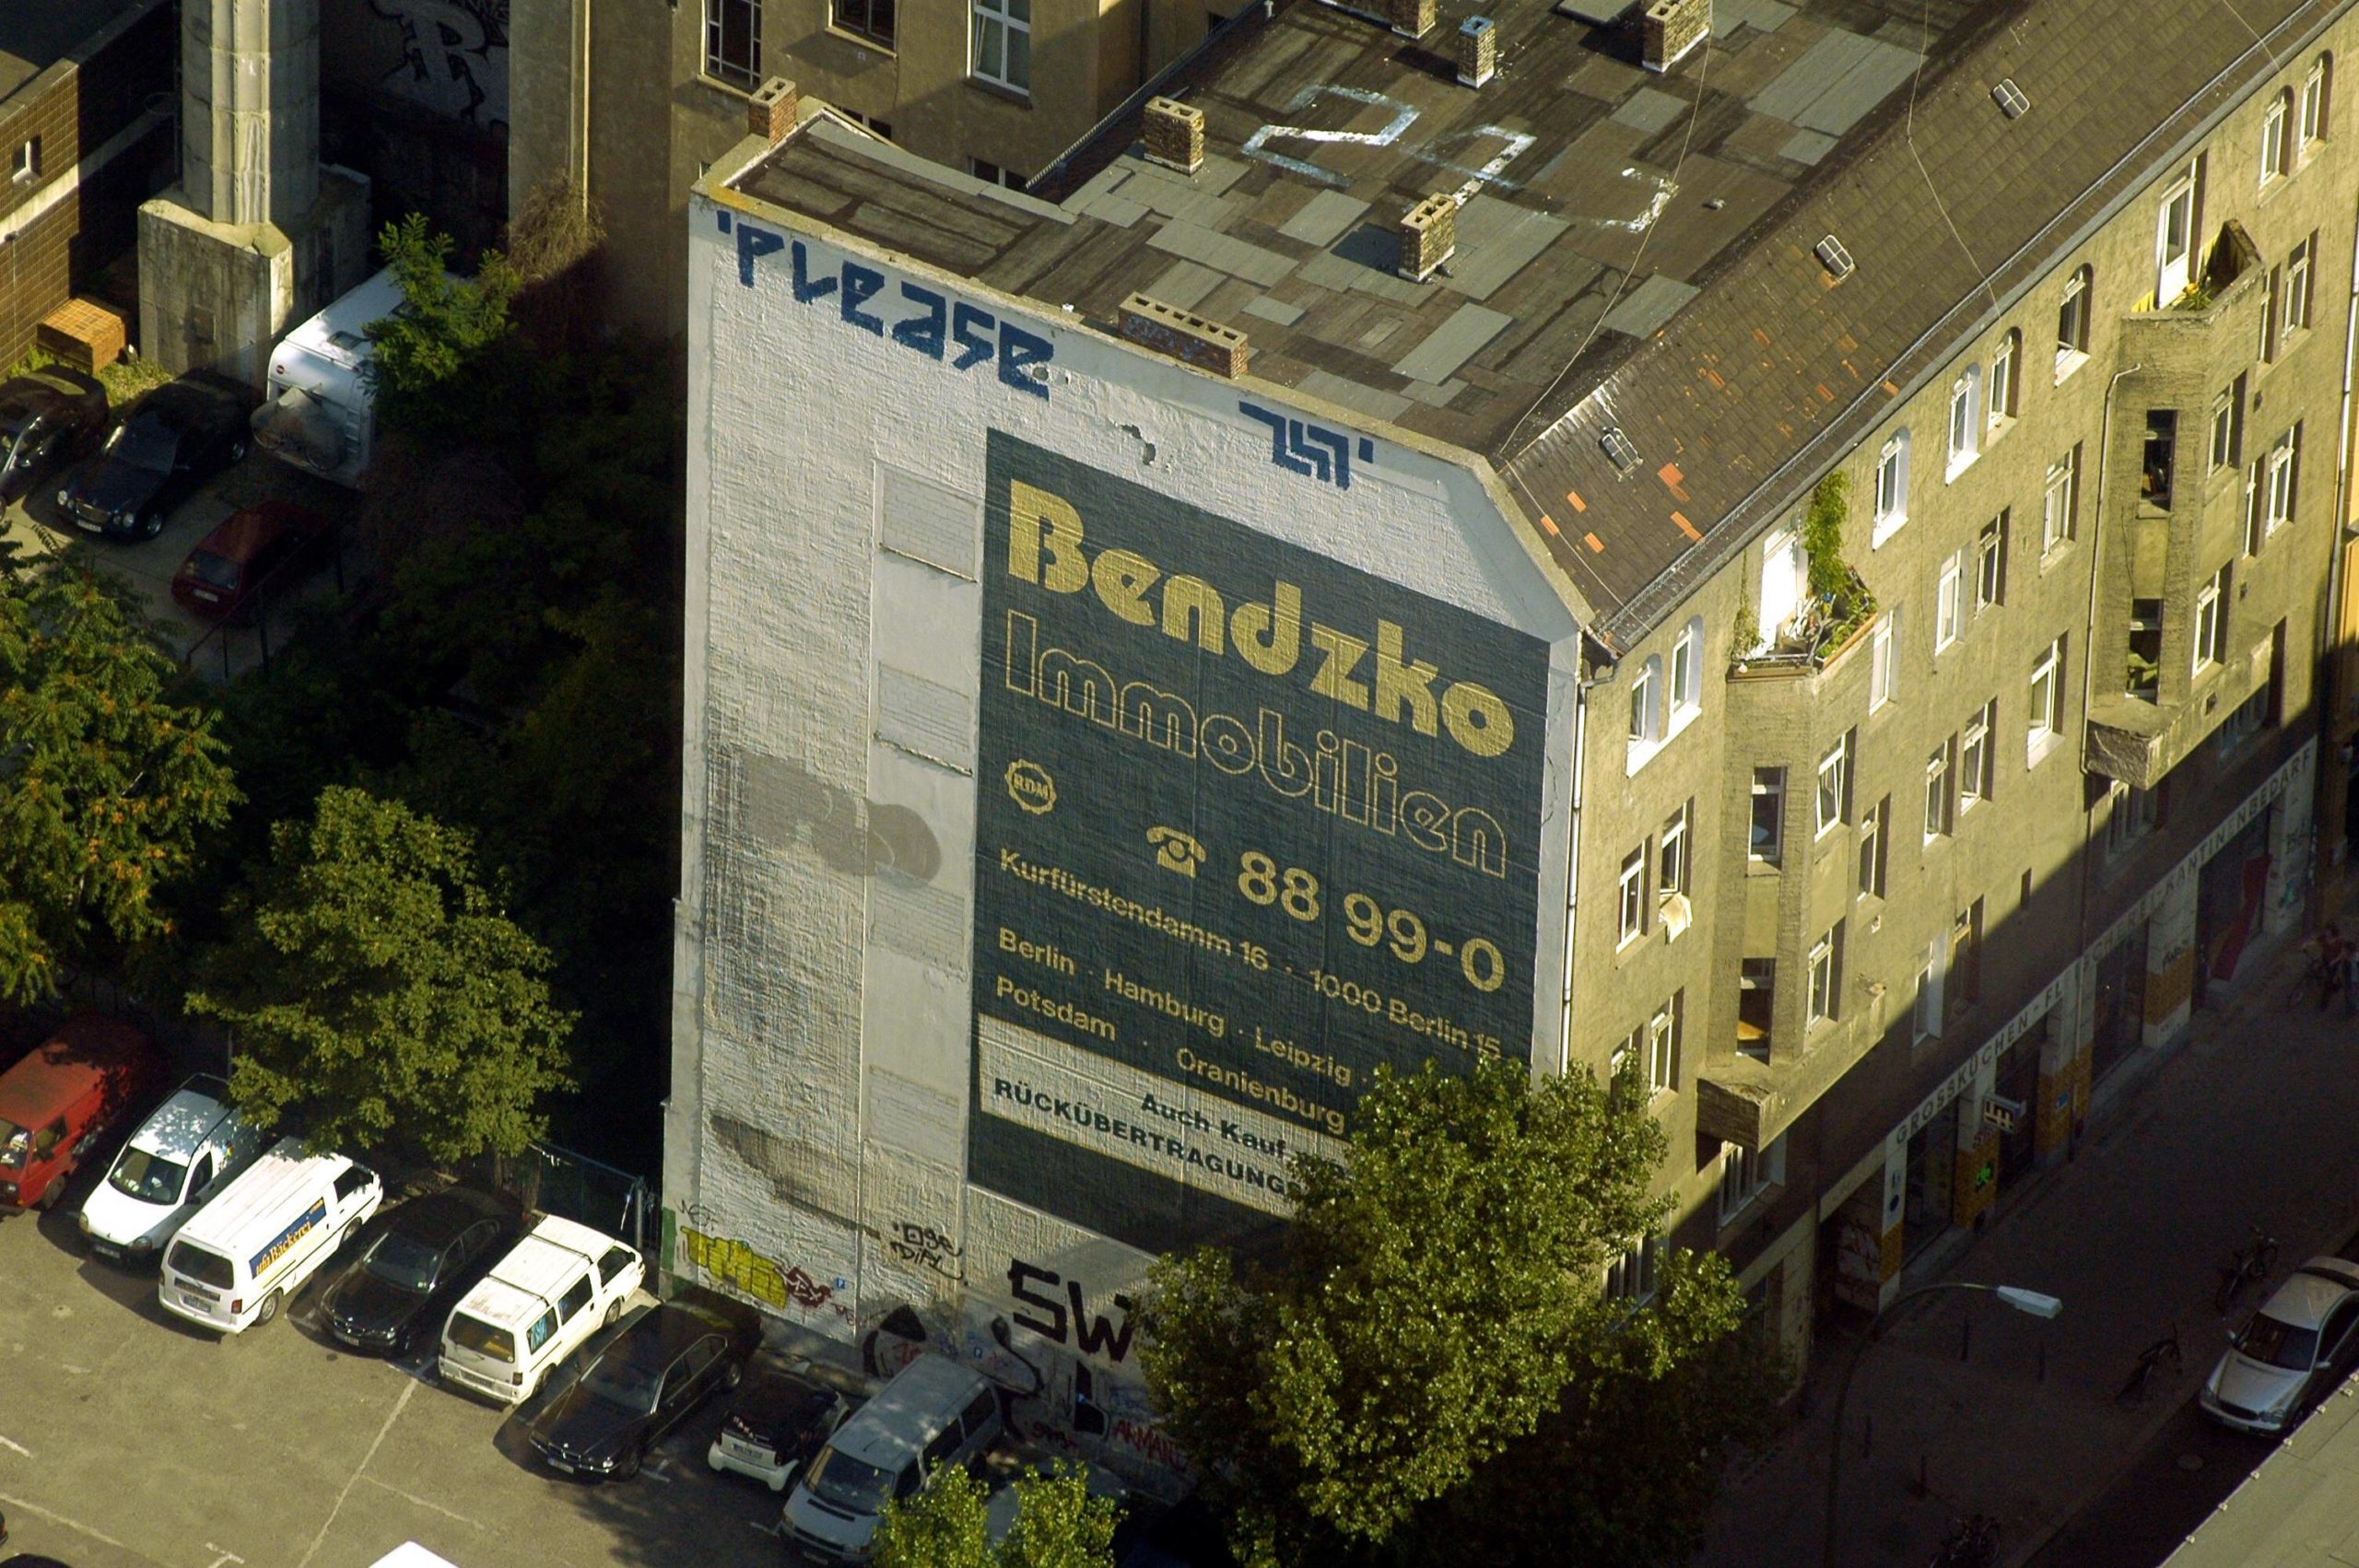 Bendzko-Immobilien-Werbung an der Brandmauer eines Wohnhauses in Berlin. Foto: Imago/Schöning